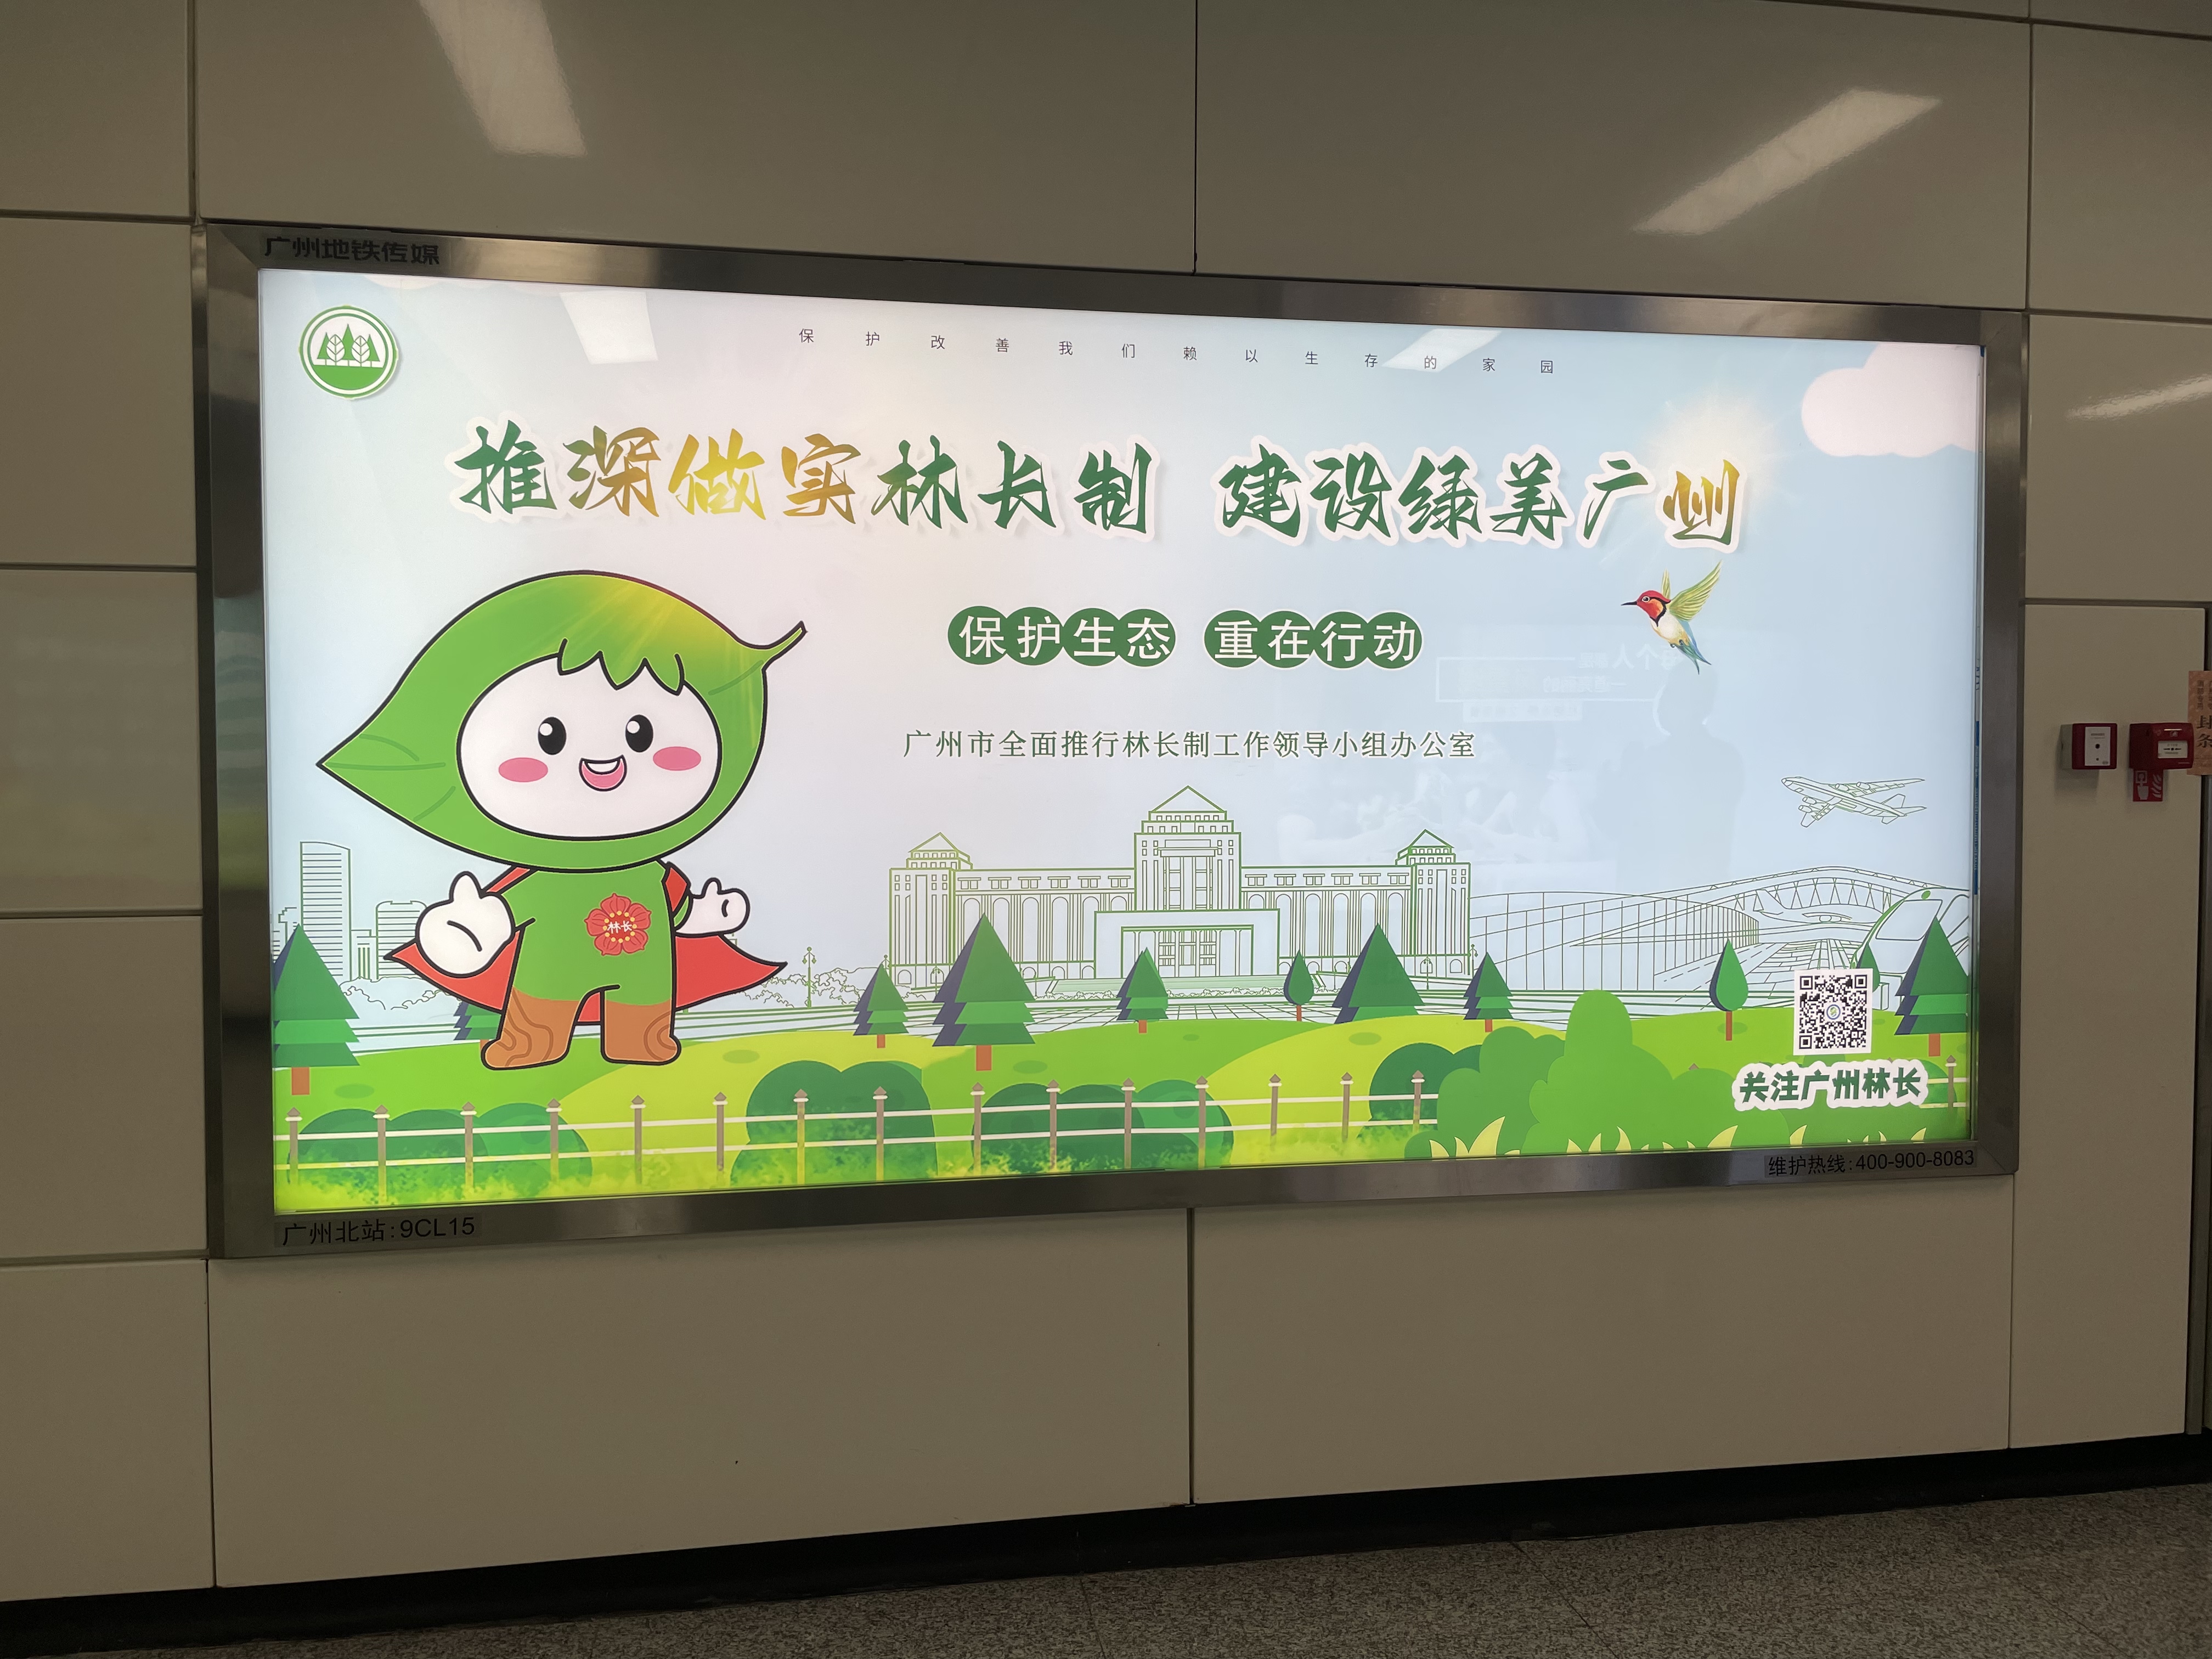 凯发k8娱乐官网app下载林长制地铁灯箱公益广告正式亮相广州50个地铁站